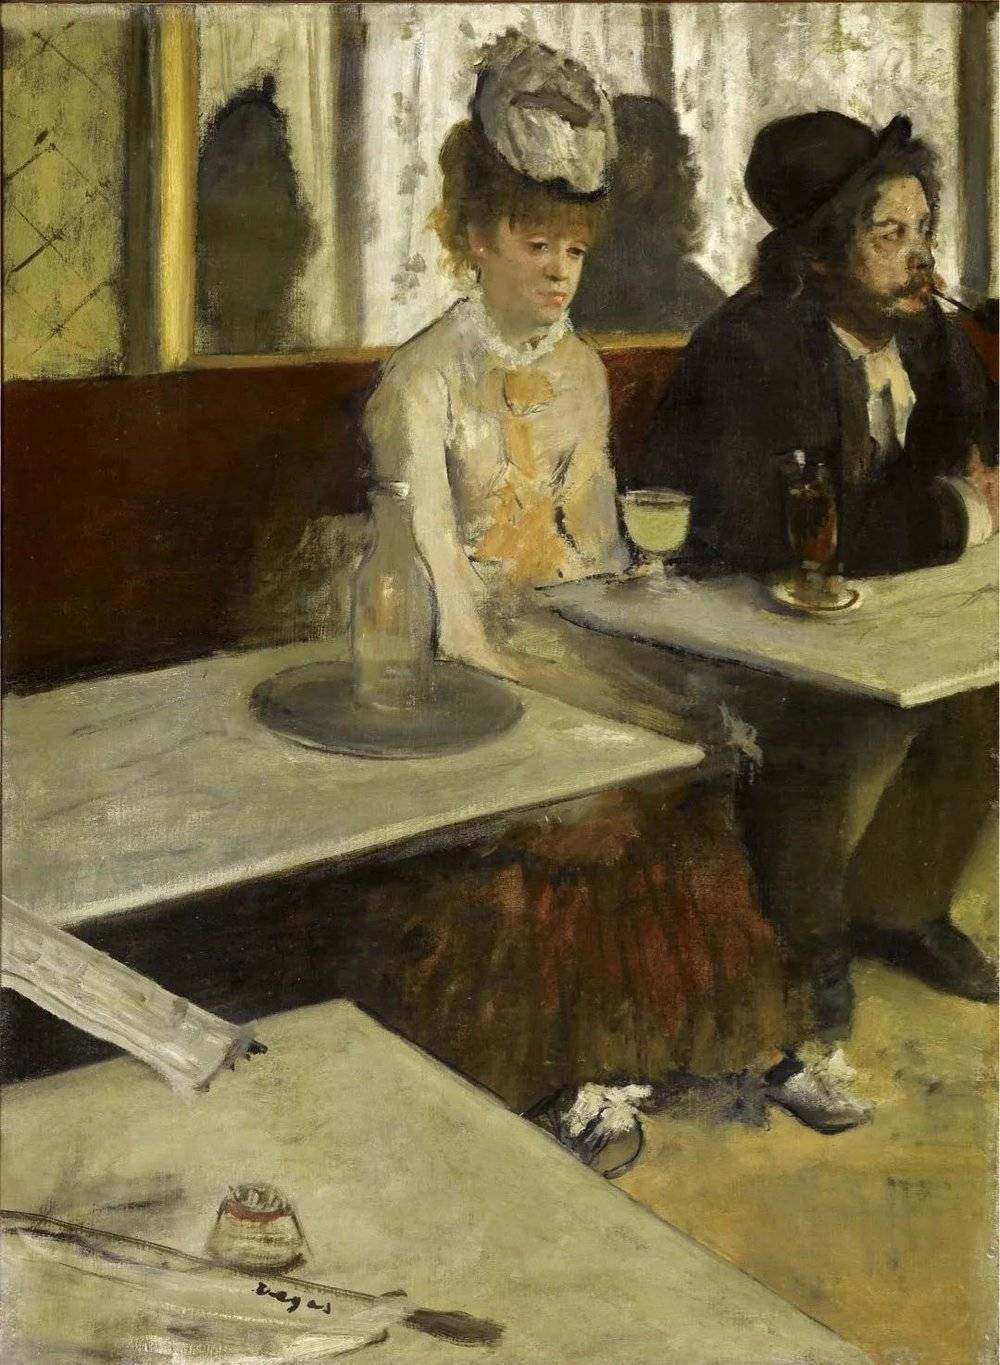 印象派画家德加油画《苦艾酒》，现存于巴黎奥赛博物馆。据说，苦艾酒有健胃、强壮身体的功效。